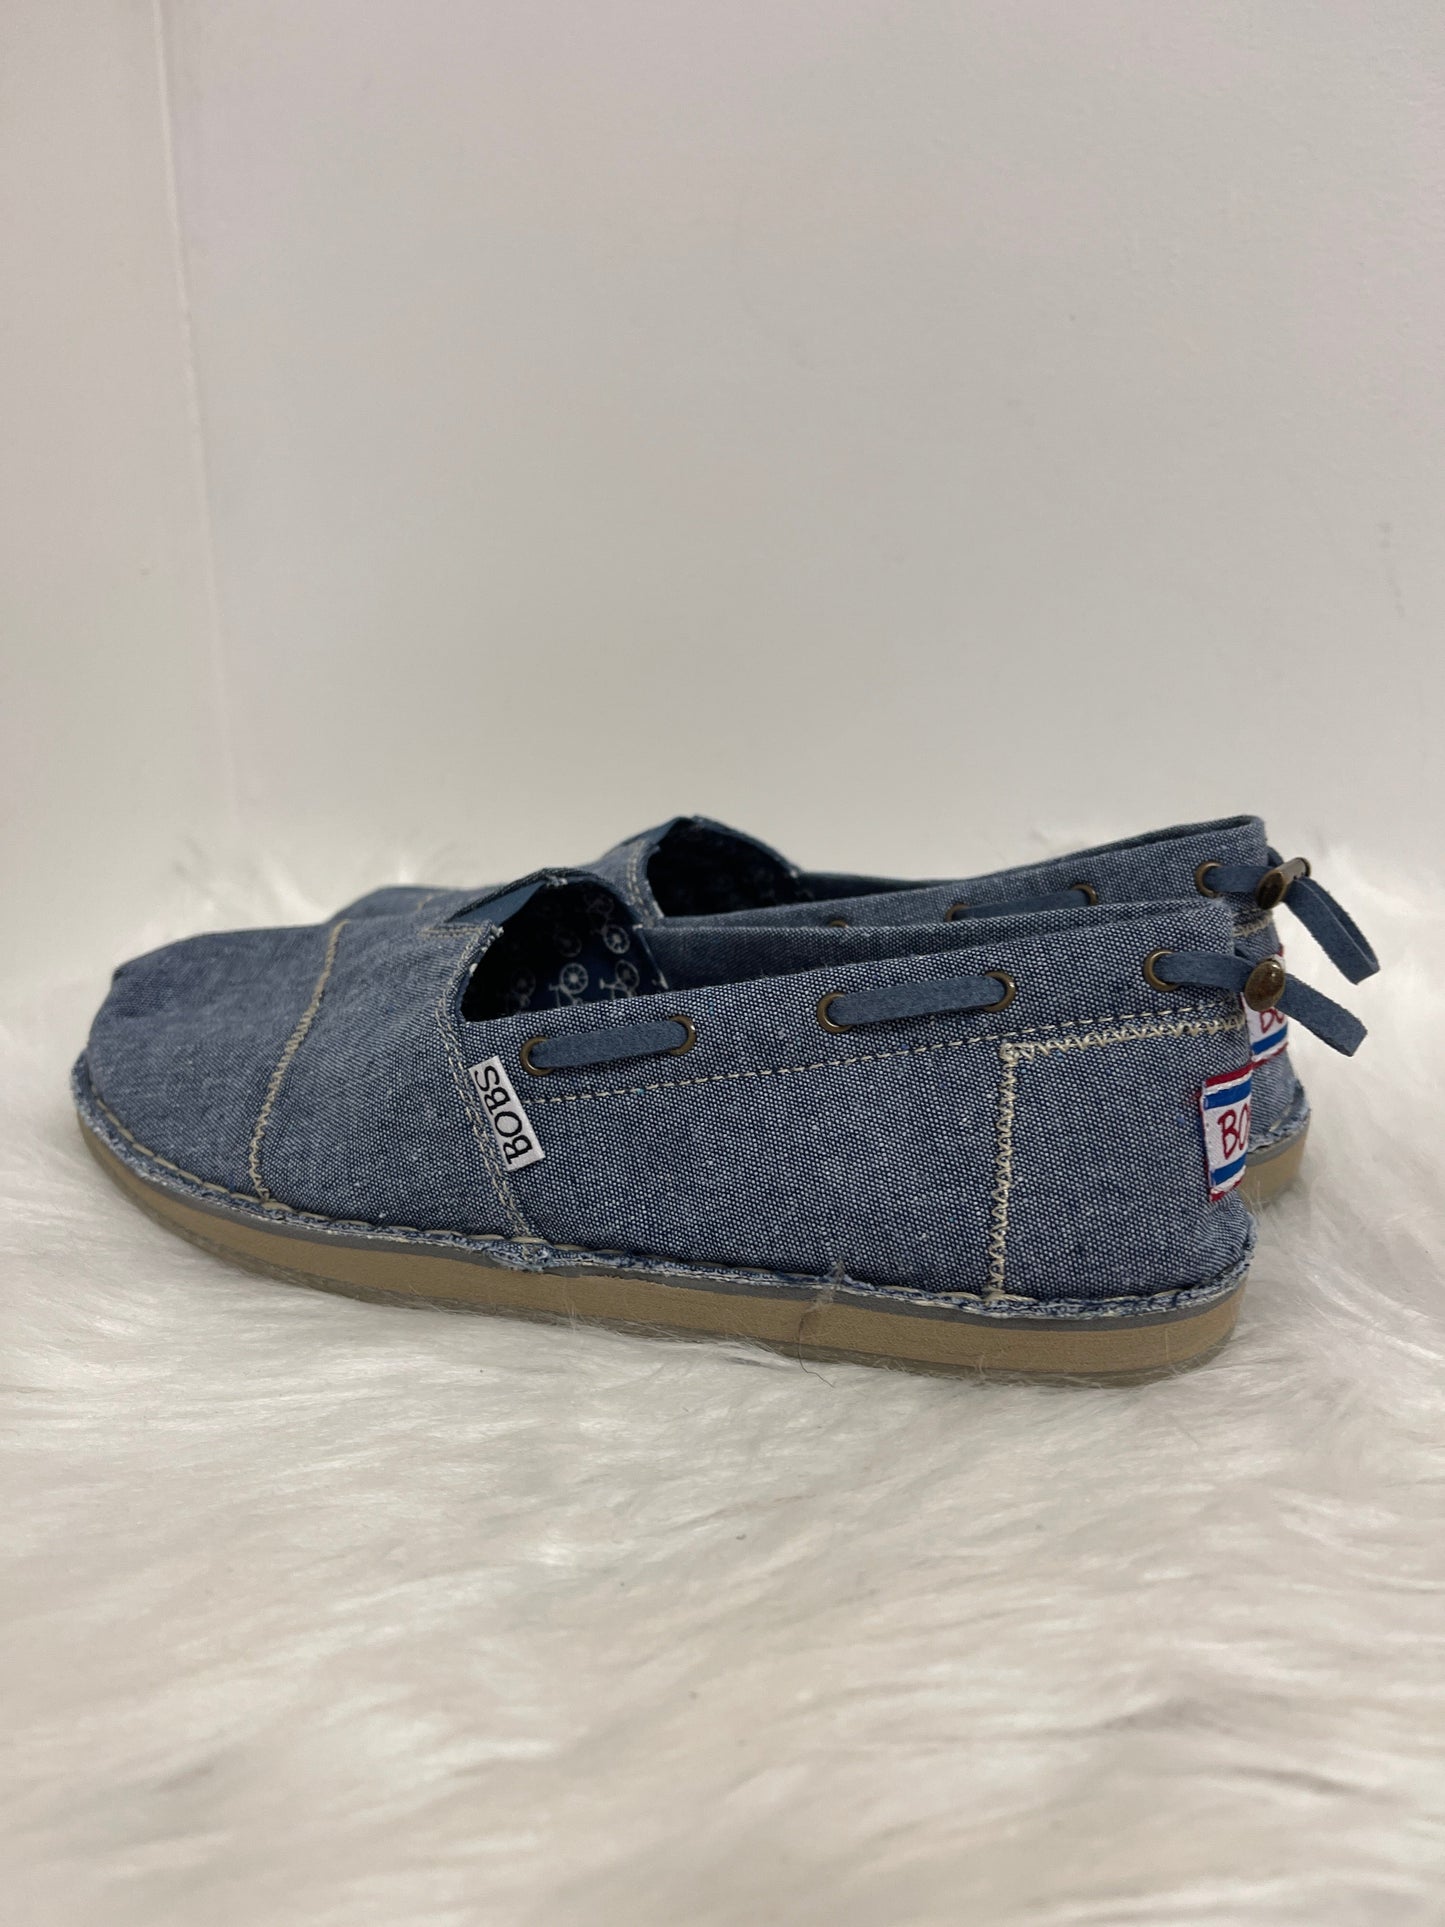 Blue Denim Shoes Flats Bobs, Size 7.5